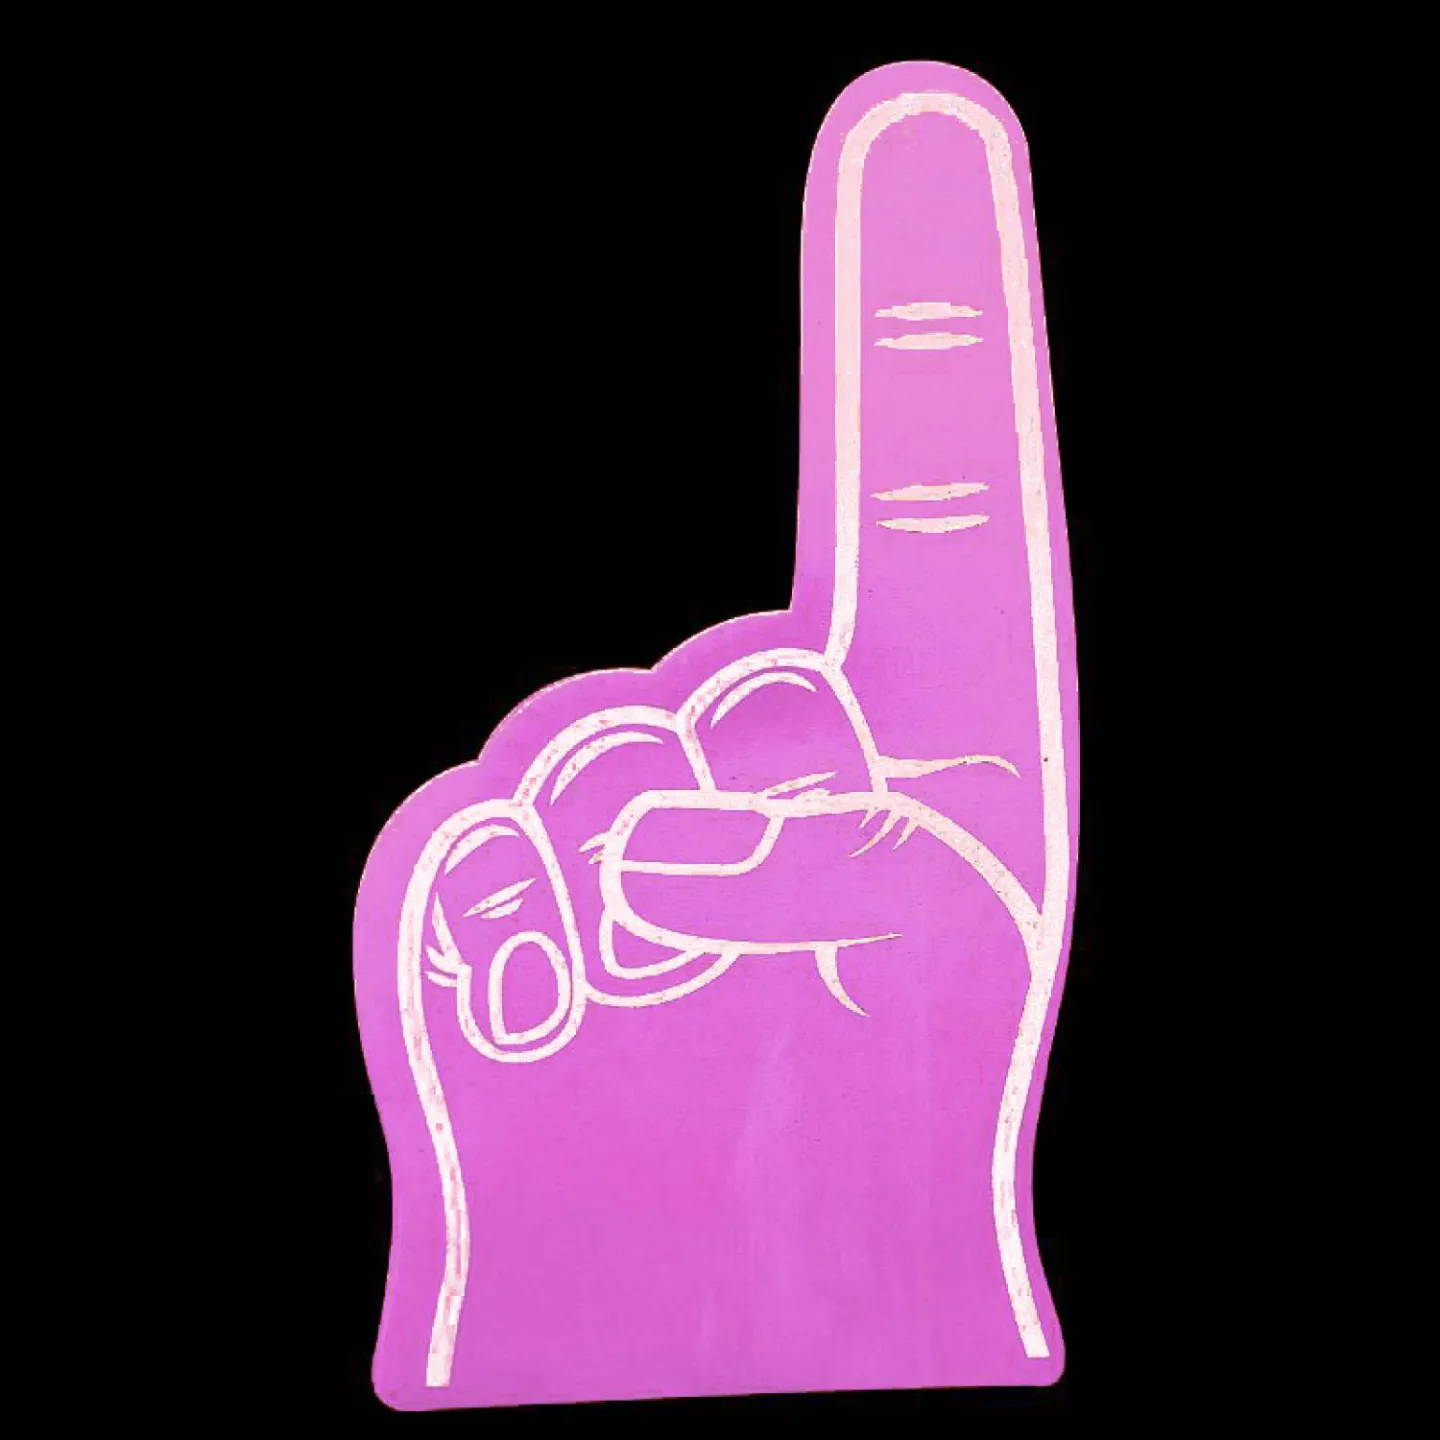 Foam hand wijsvinger roze.